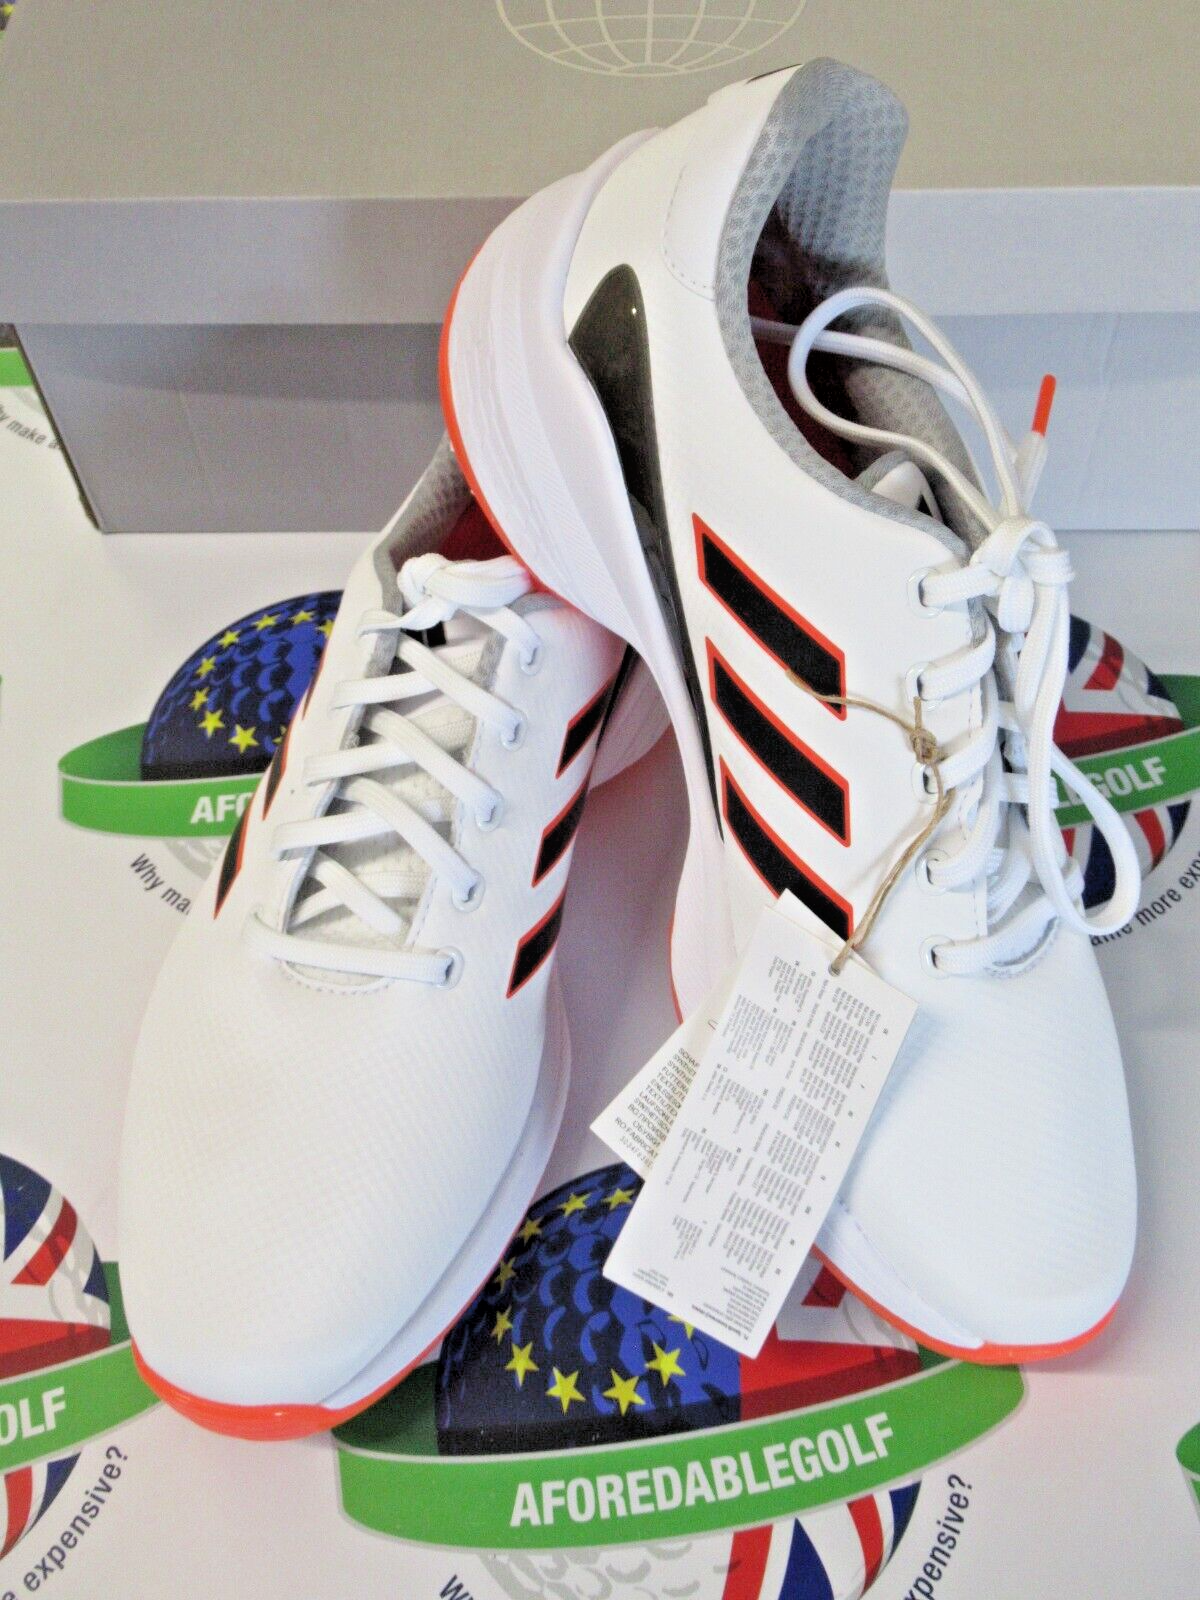 adidas zg23 waterproof golf shoes white/orange uk size 8